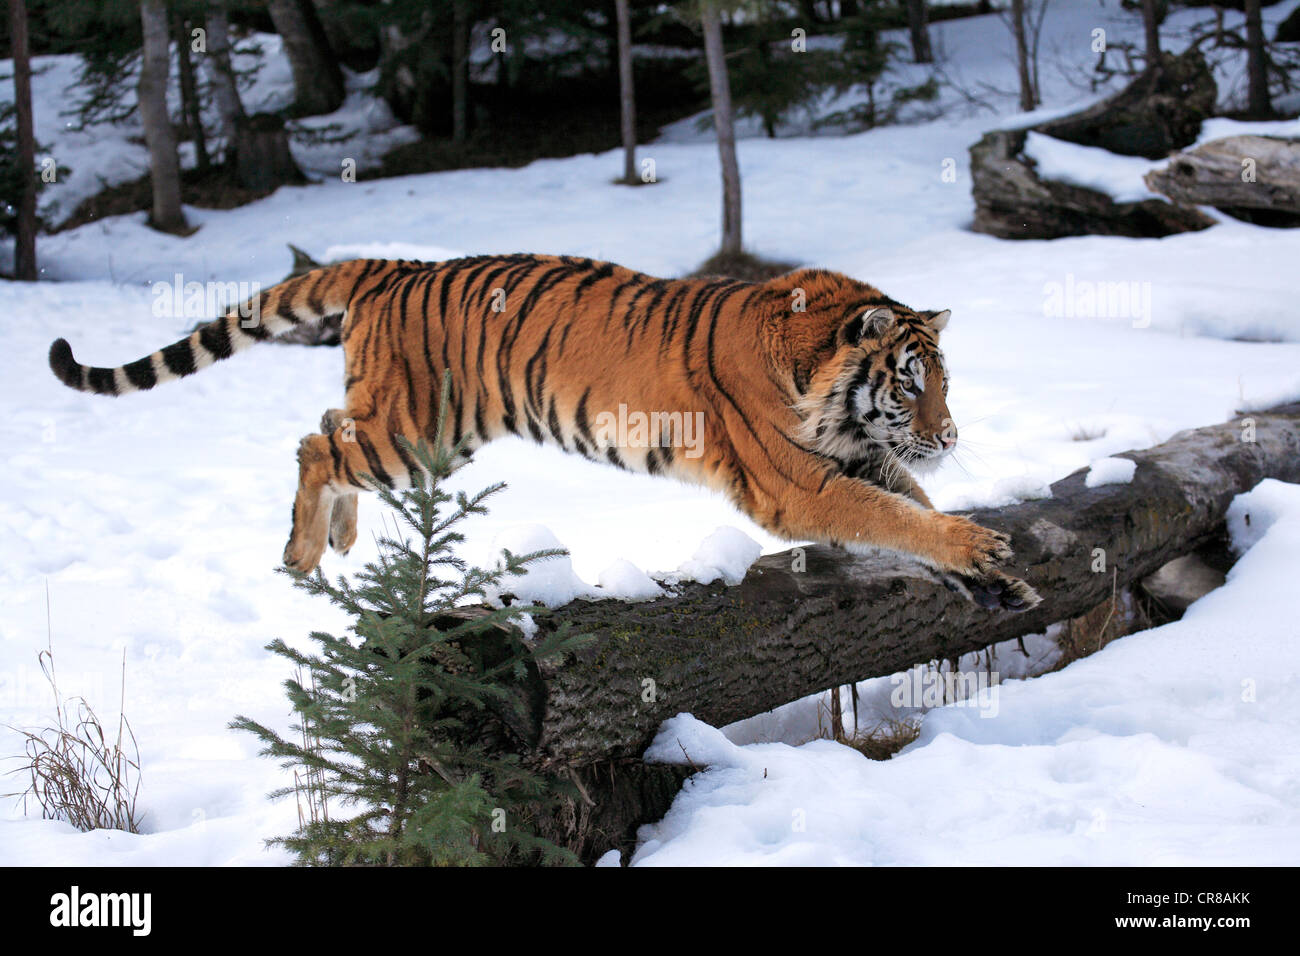 Siberian Tiger (Panthera tigris altaica), jumping, snow, winter, Asia Stock Photo